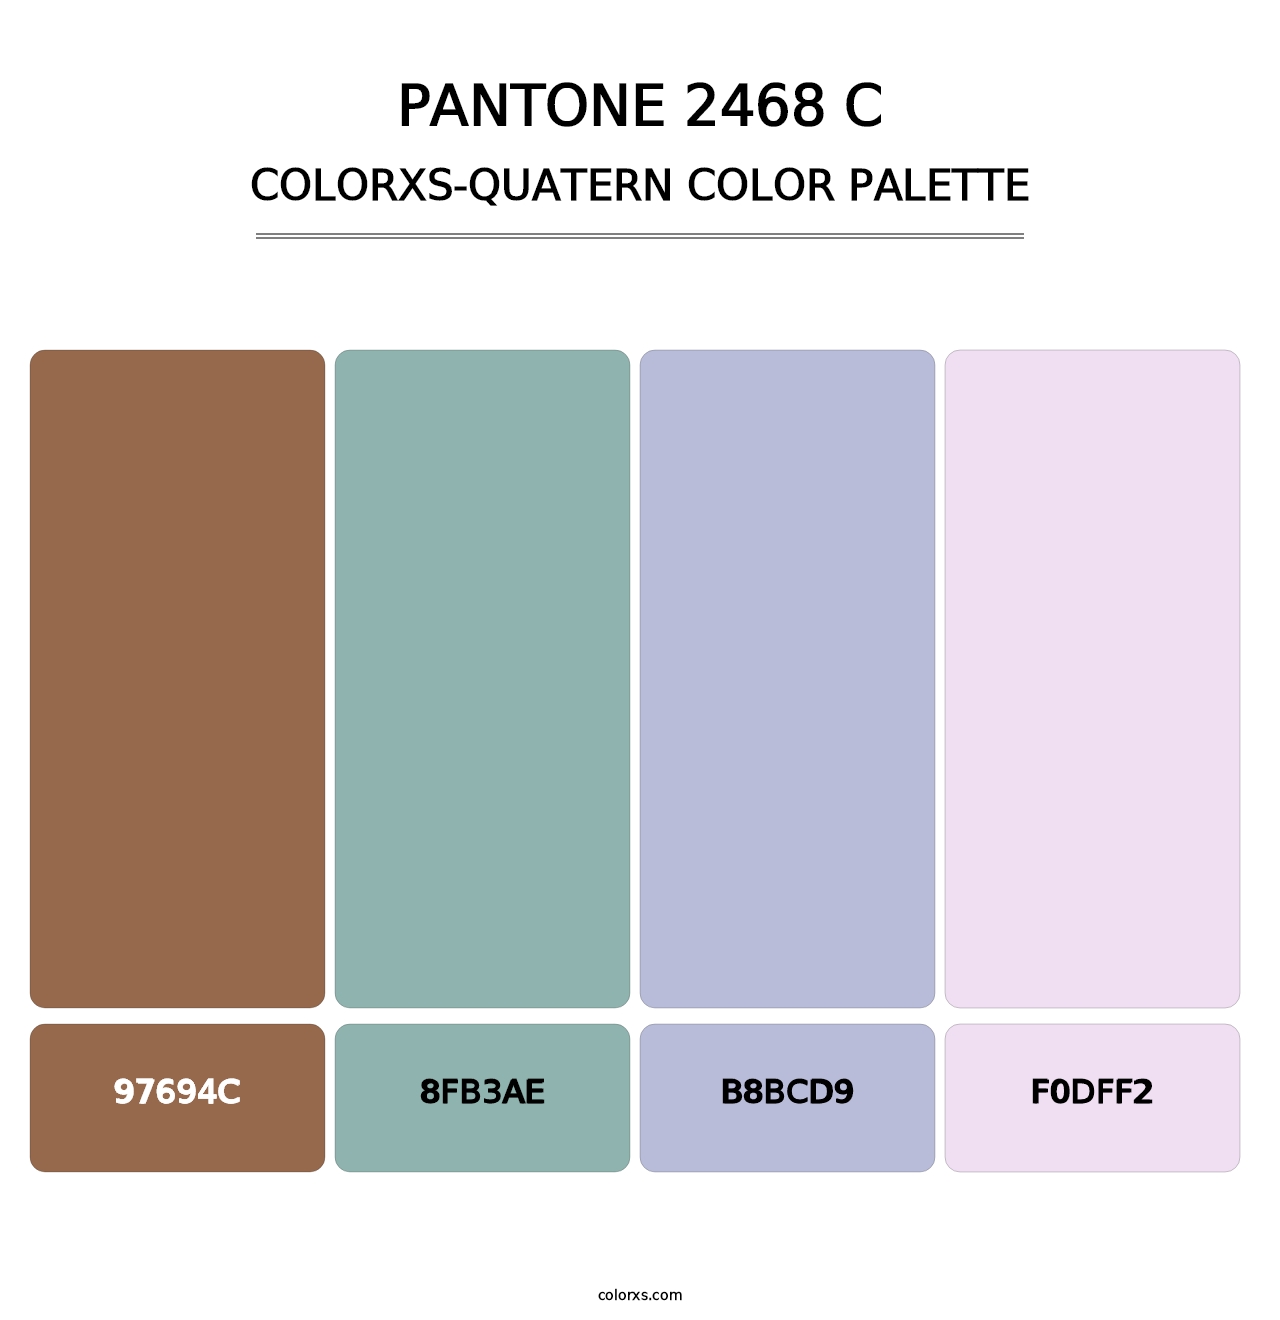 PANTONE 2468 C - Colorxs Quatern Palette